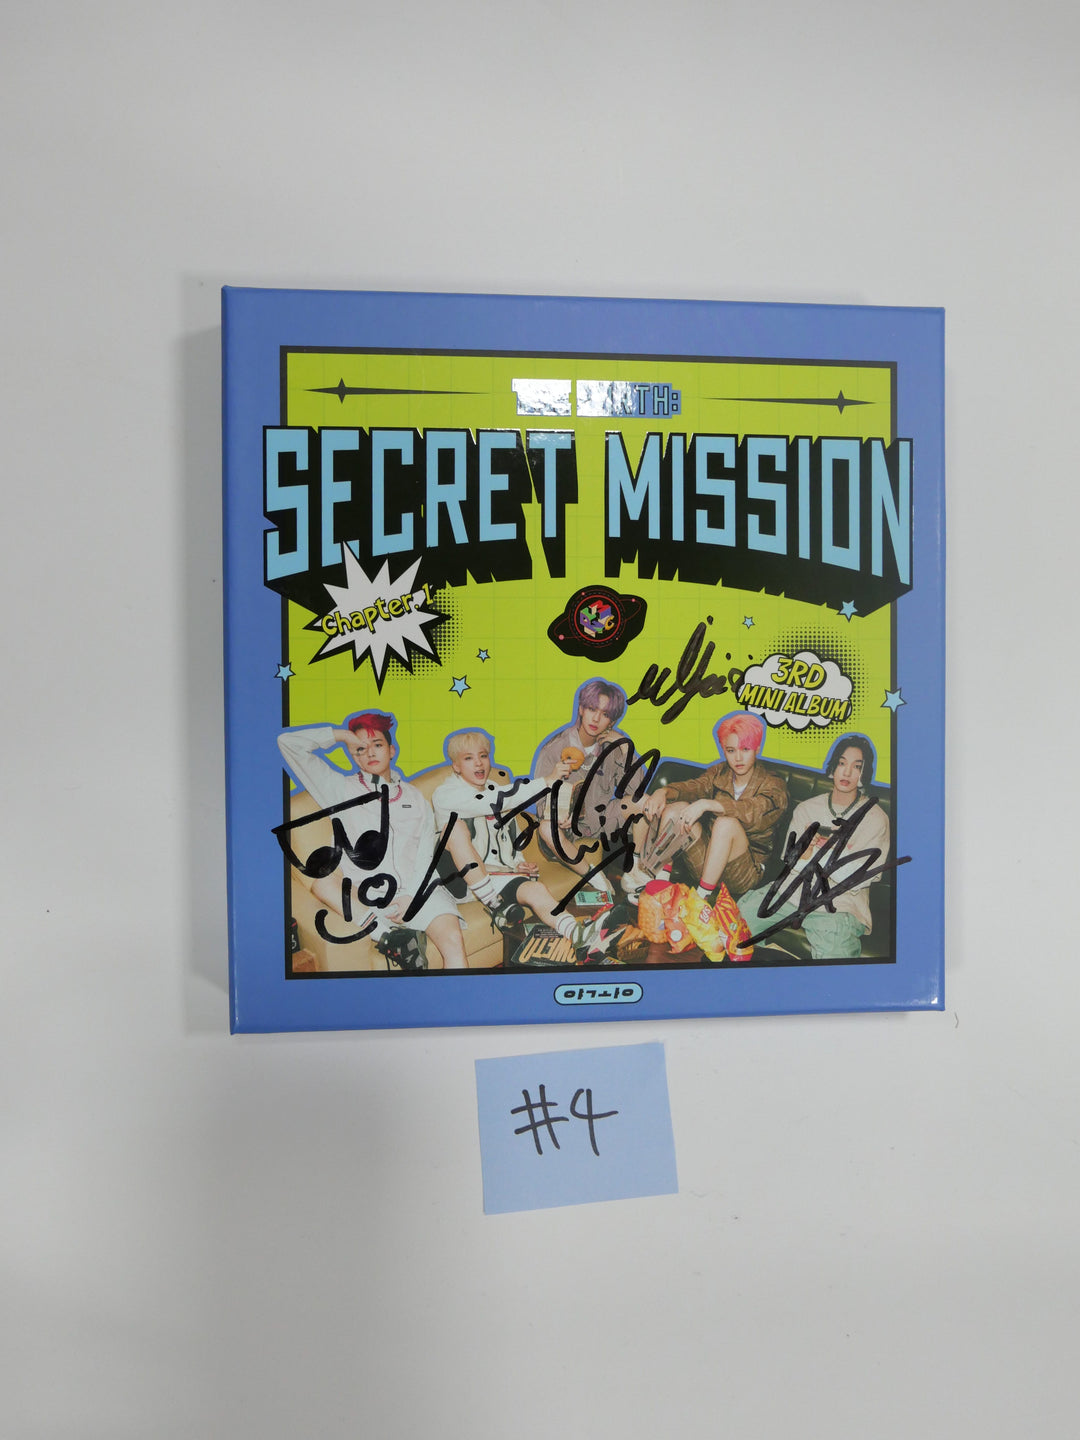 MCND "Secret Mission" 3rd mini - Hand Autographed(Signed) Promo Album